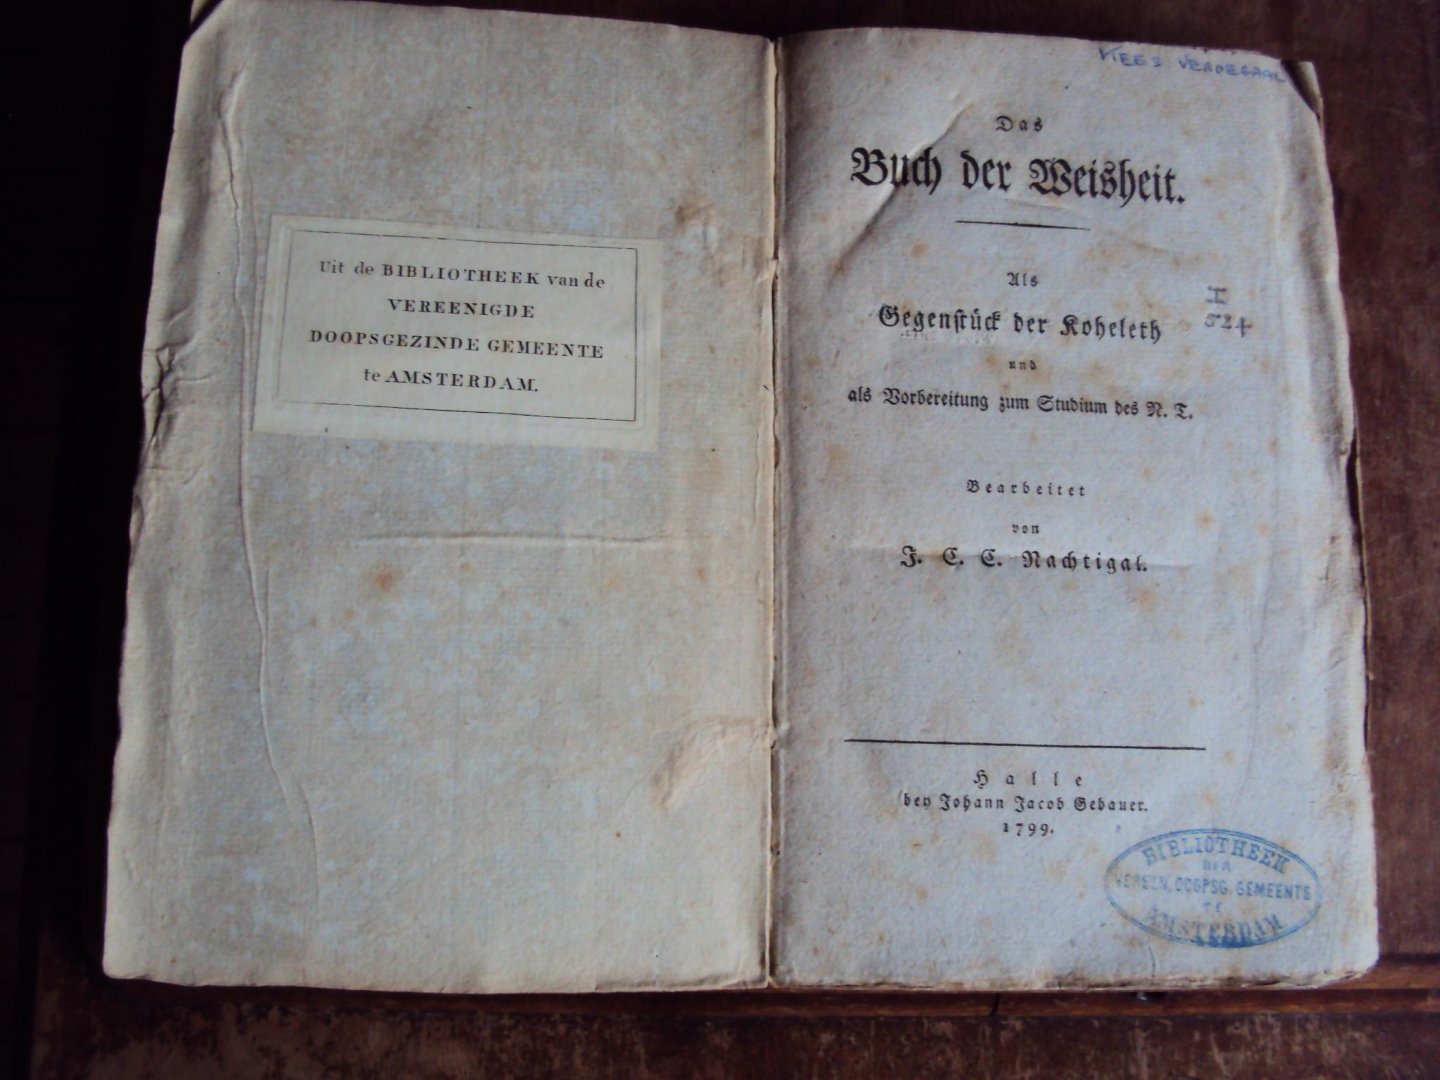 Nachtigal, J.C.C. - Das Buch der Weisheit als Gegenstück der Koheleth und als Vorbereitung zum Studium des N.T.